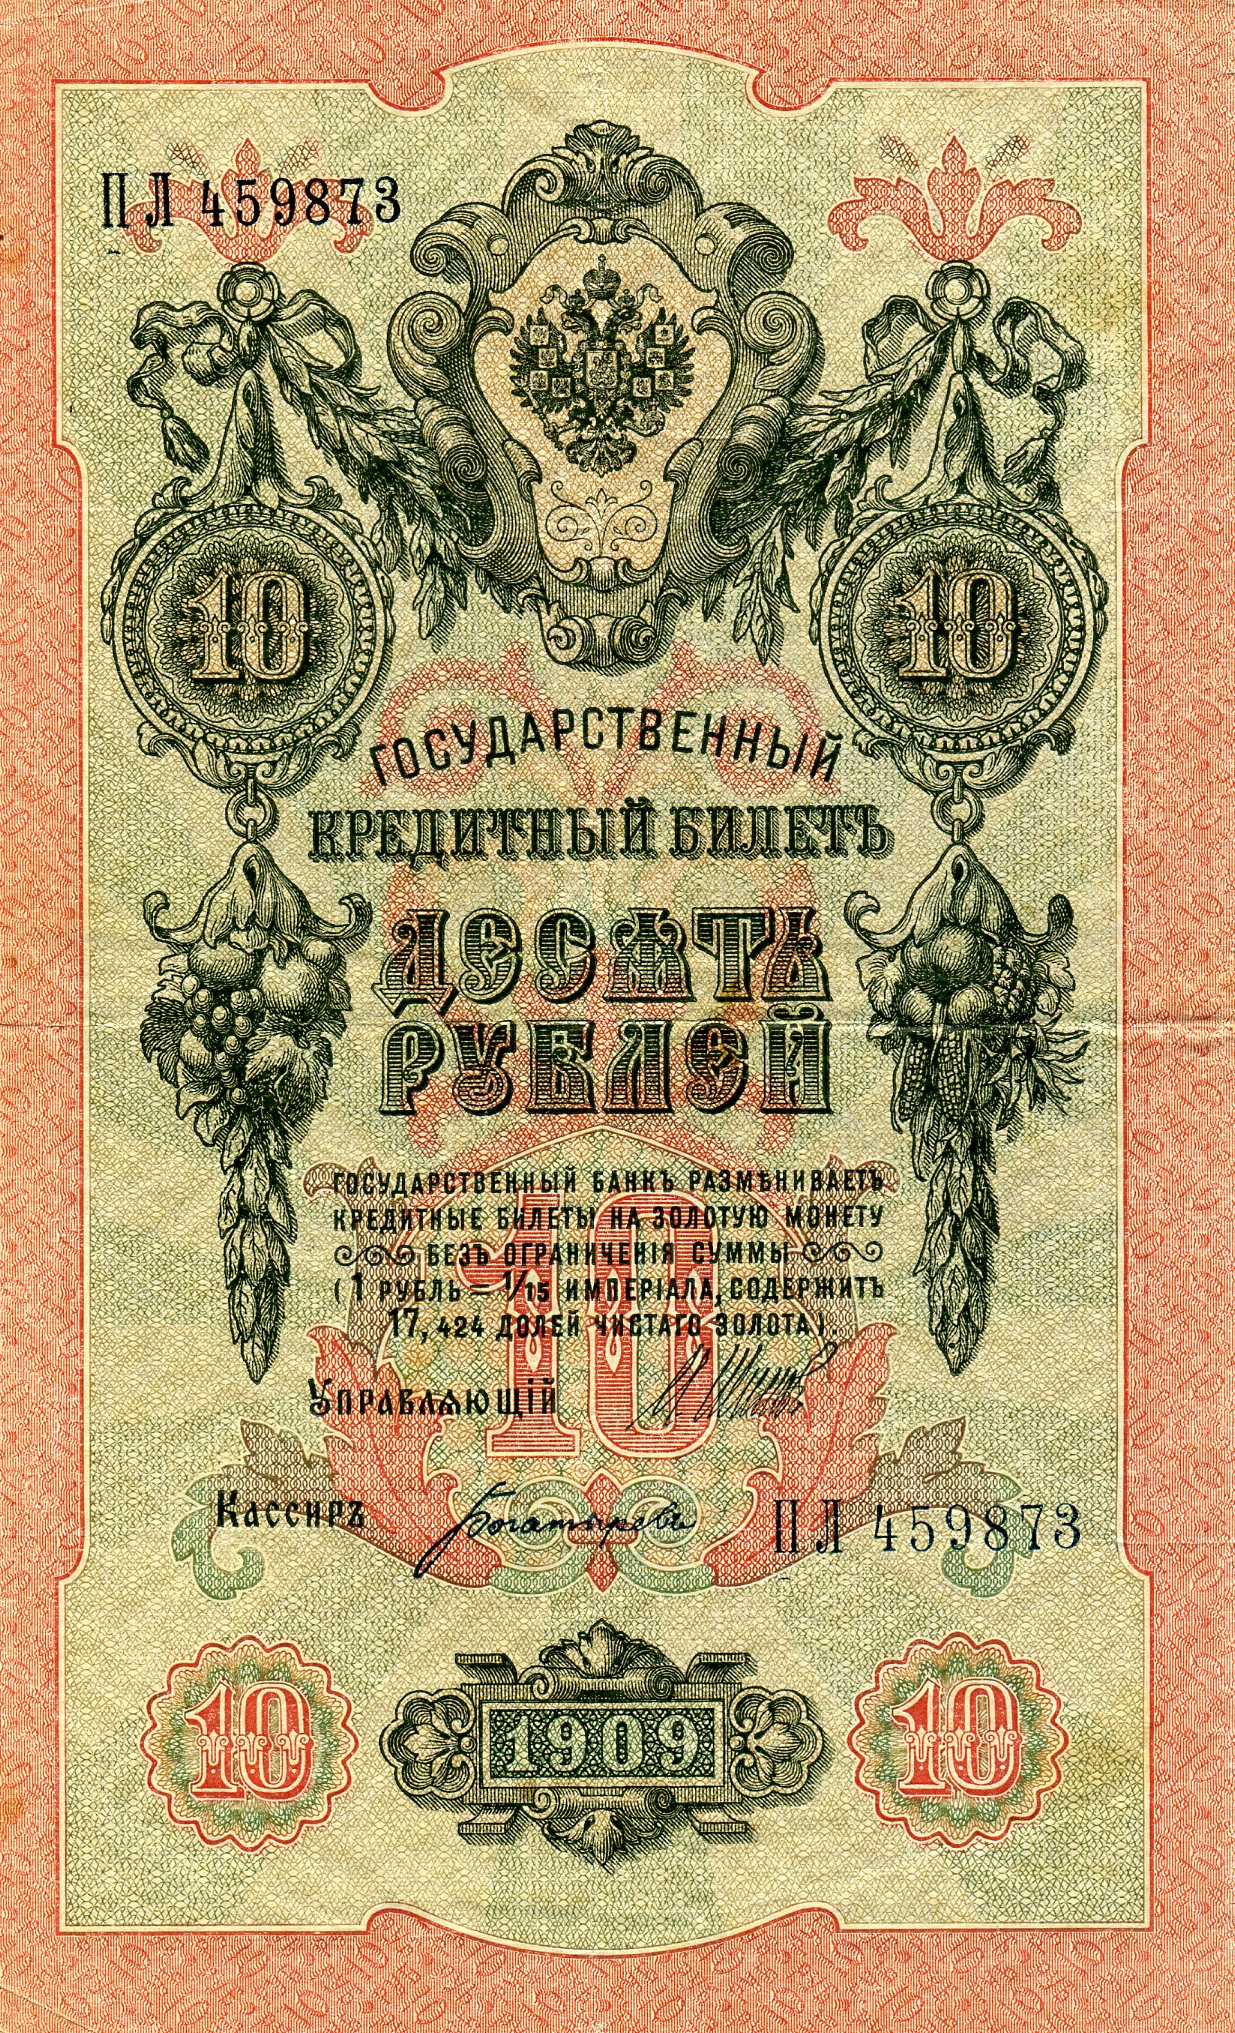 10 рублей 1909 года. Аверс. Реферат Рефератович.